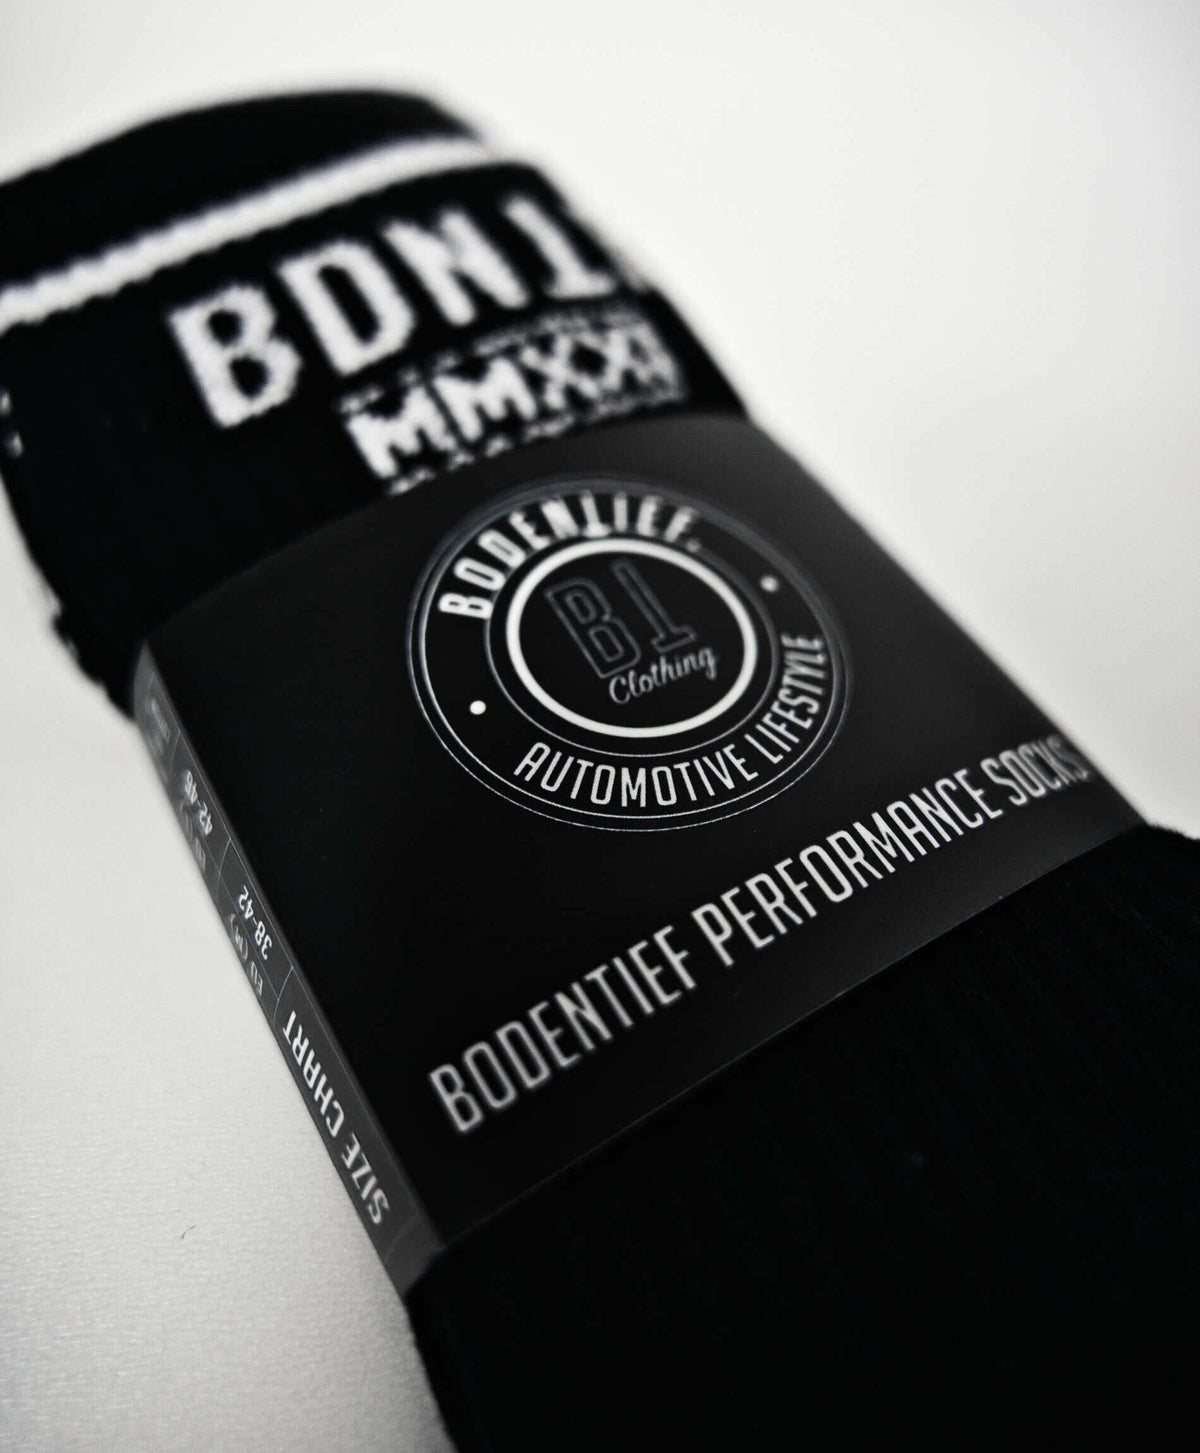 bodentief. Socken -WORLD BLACK 3er Pack-